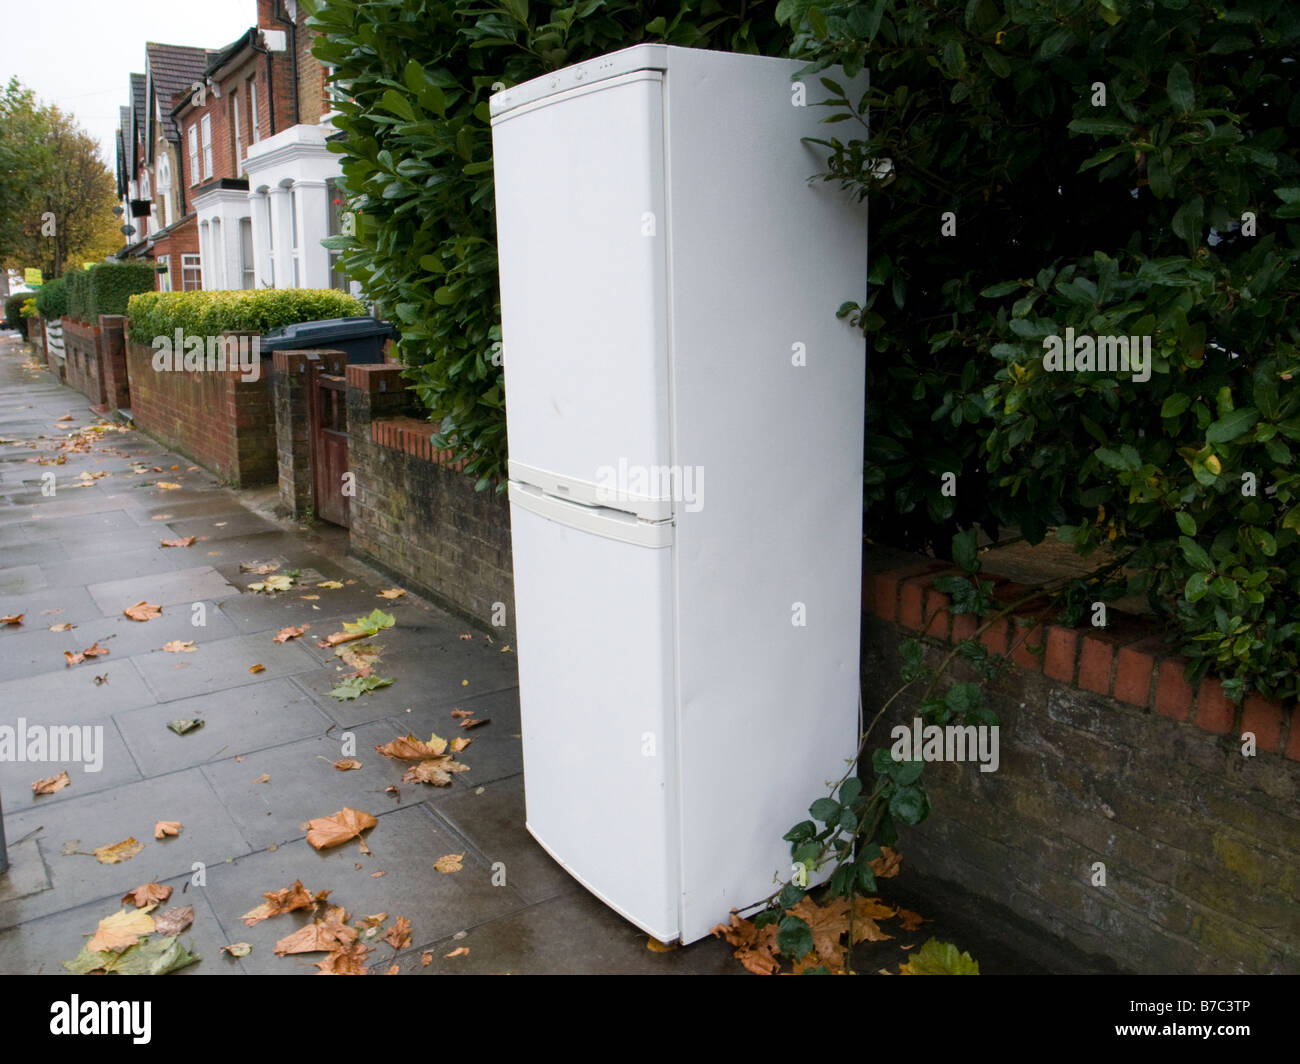 Discarded fridge freezer on pavement outside house London England UK Stock Photo